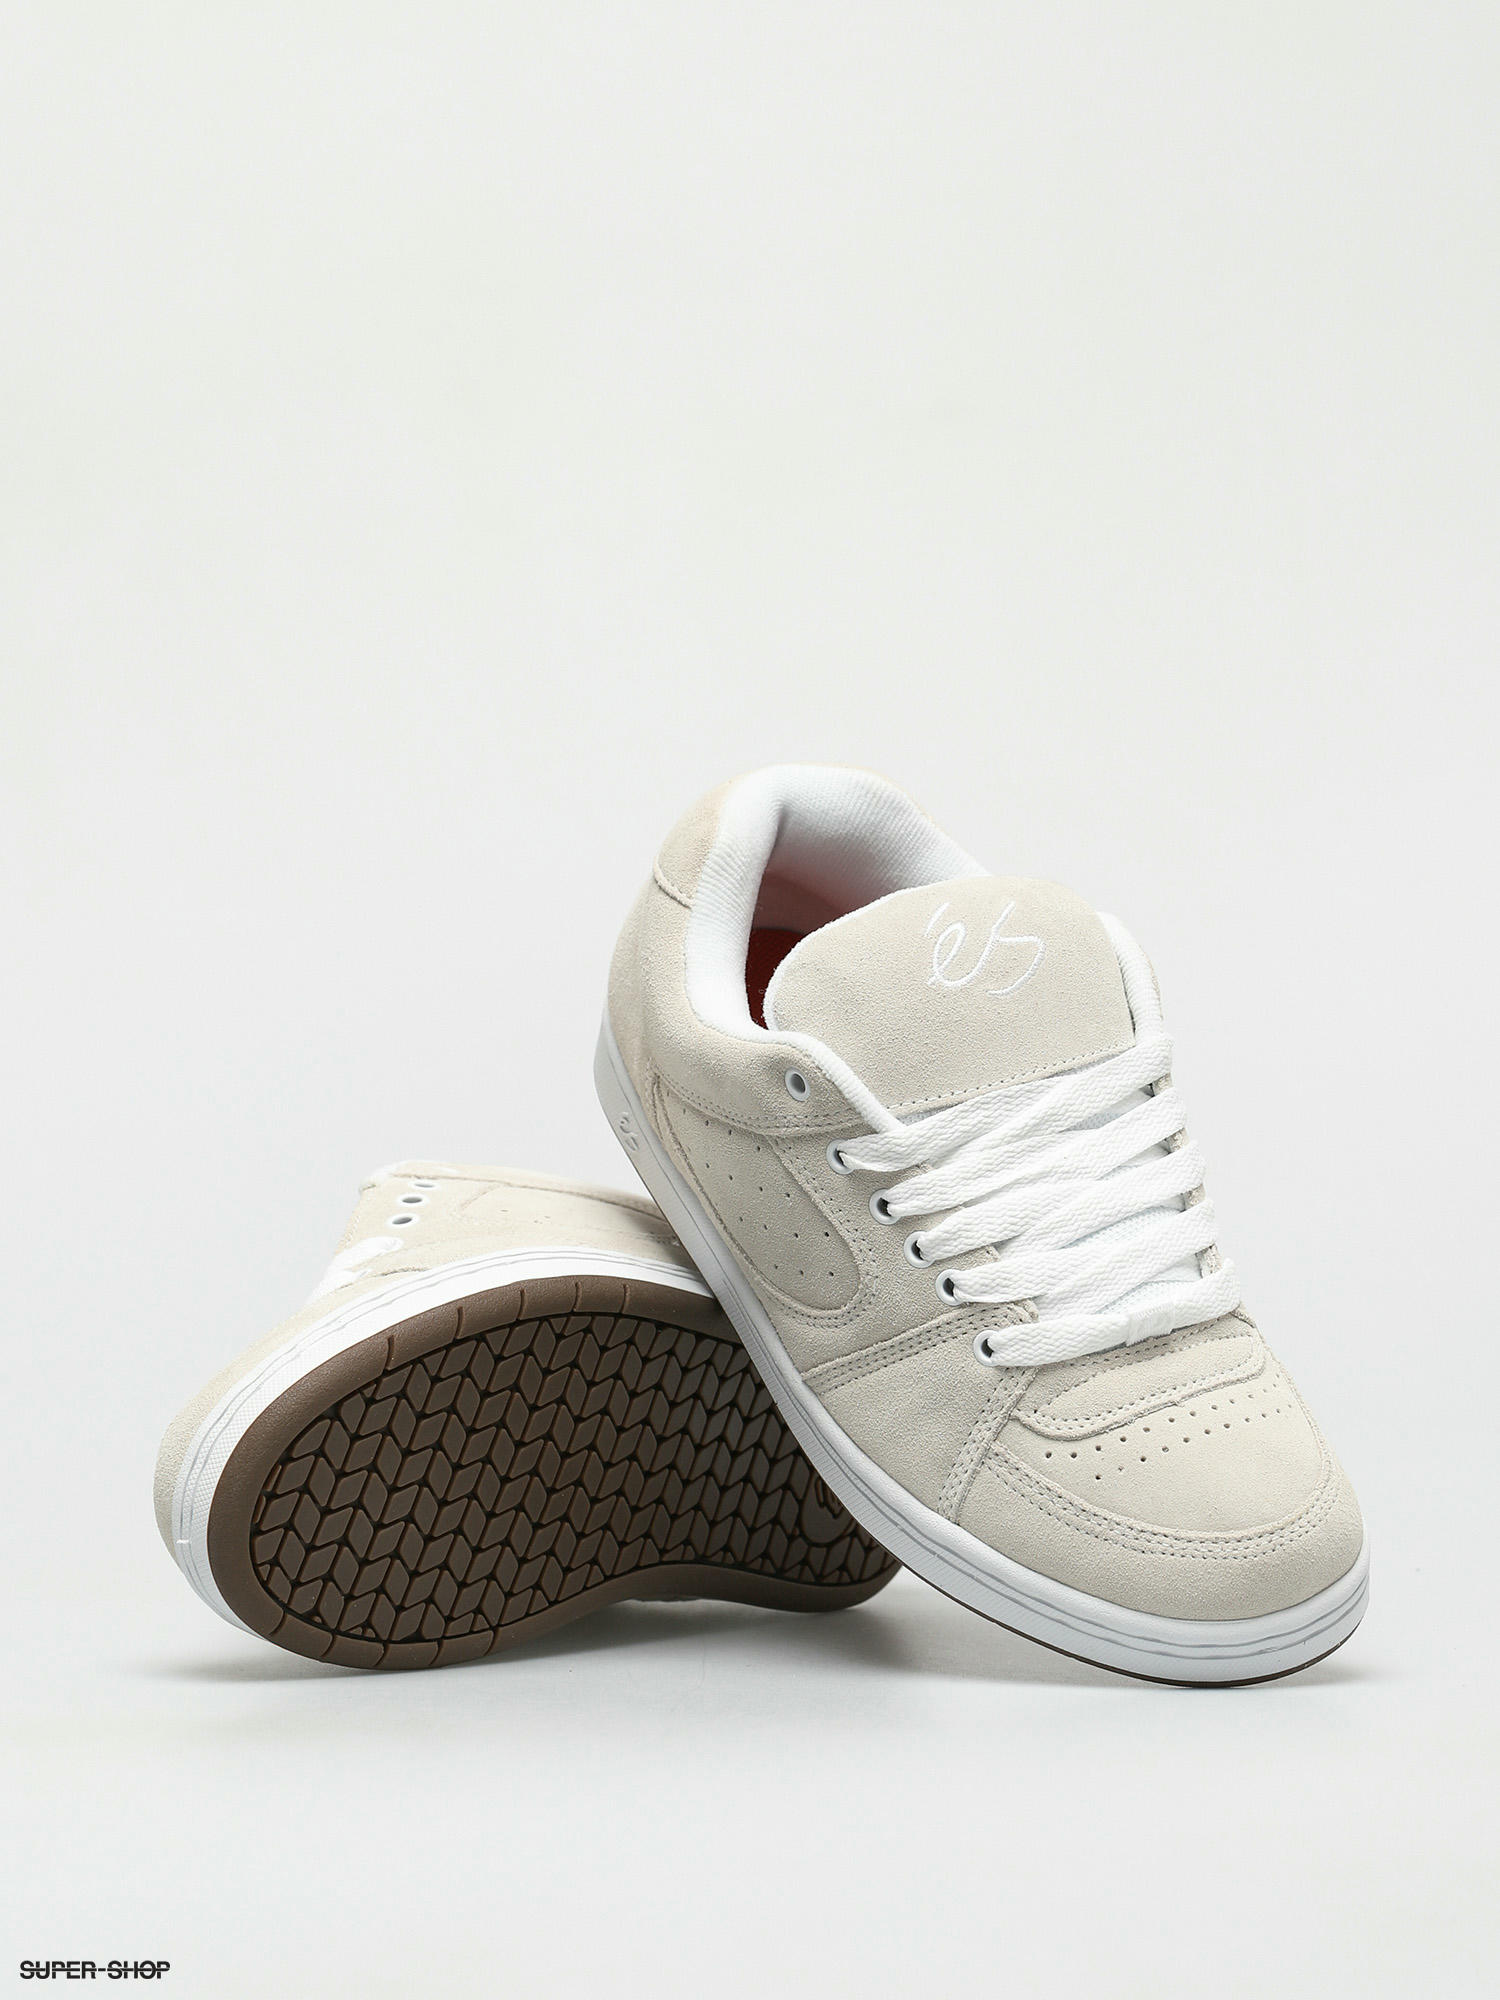 eS Accel Og Shoes (white/gum)